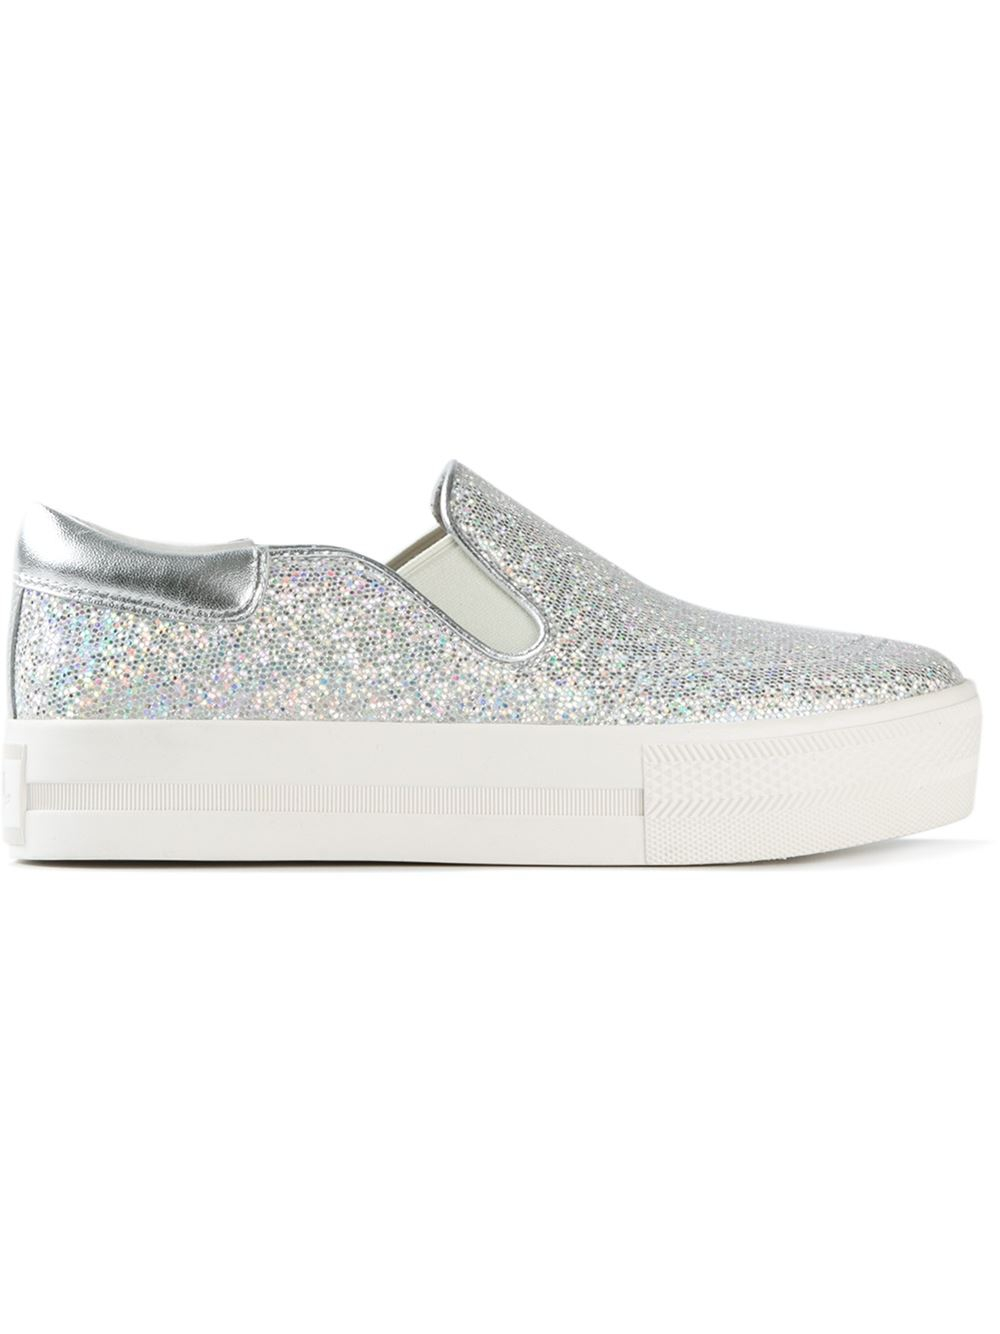 silver glitter slip on sneakers